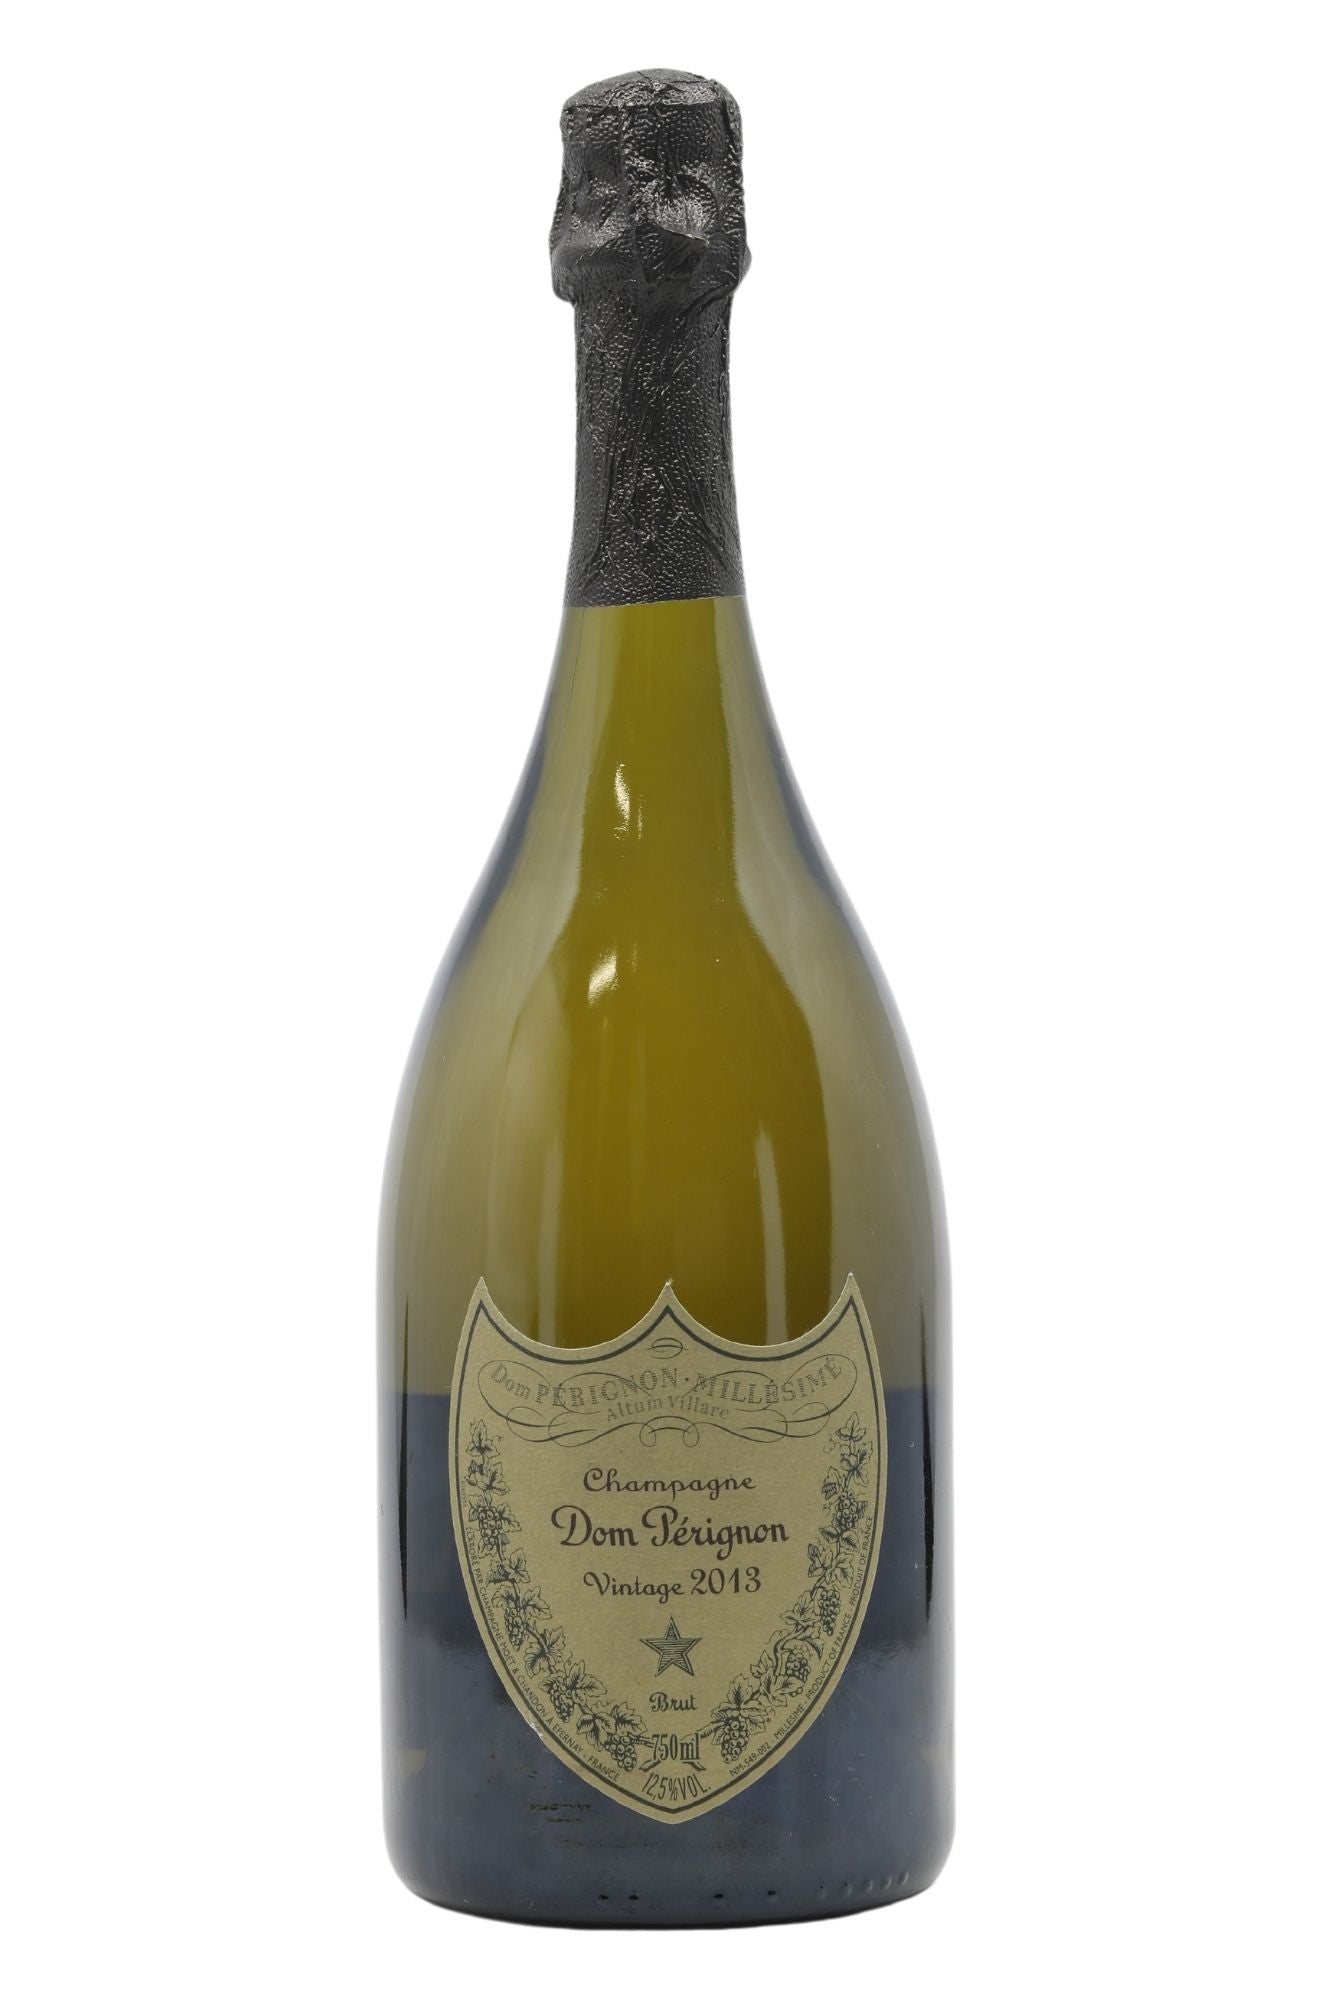 Dom Perignon 2013 Champagne